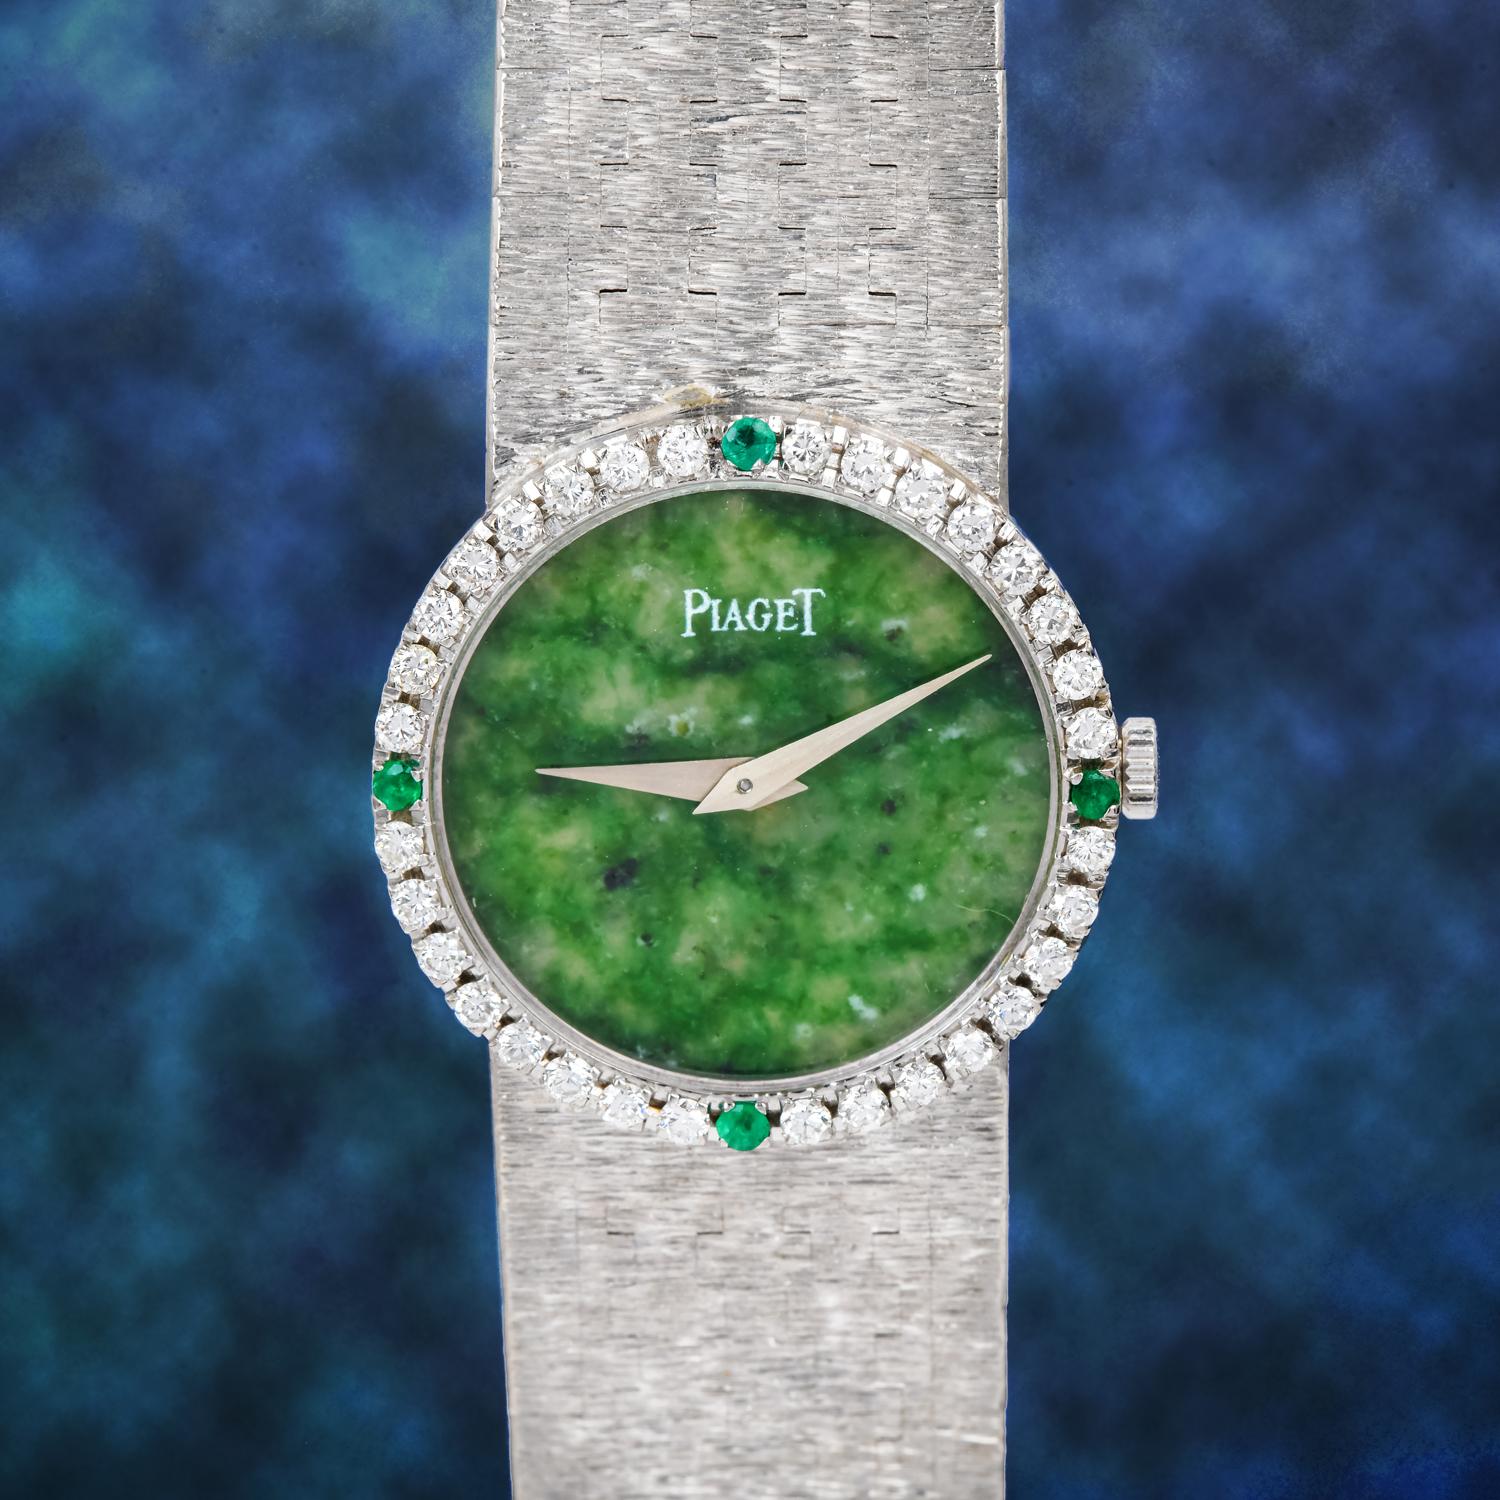 Piaget Vintage Green jade Dial Diamond Gold Ladies WatchCette montre-bracelet Piaget vintage des années 1970 en jade naturel et diamant en or blanc 18K est à peine portée. Il s'agit d'une rare variation de la collection PIAGET depose présentant un